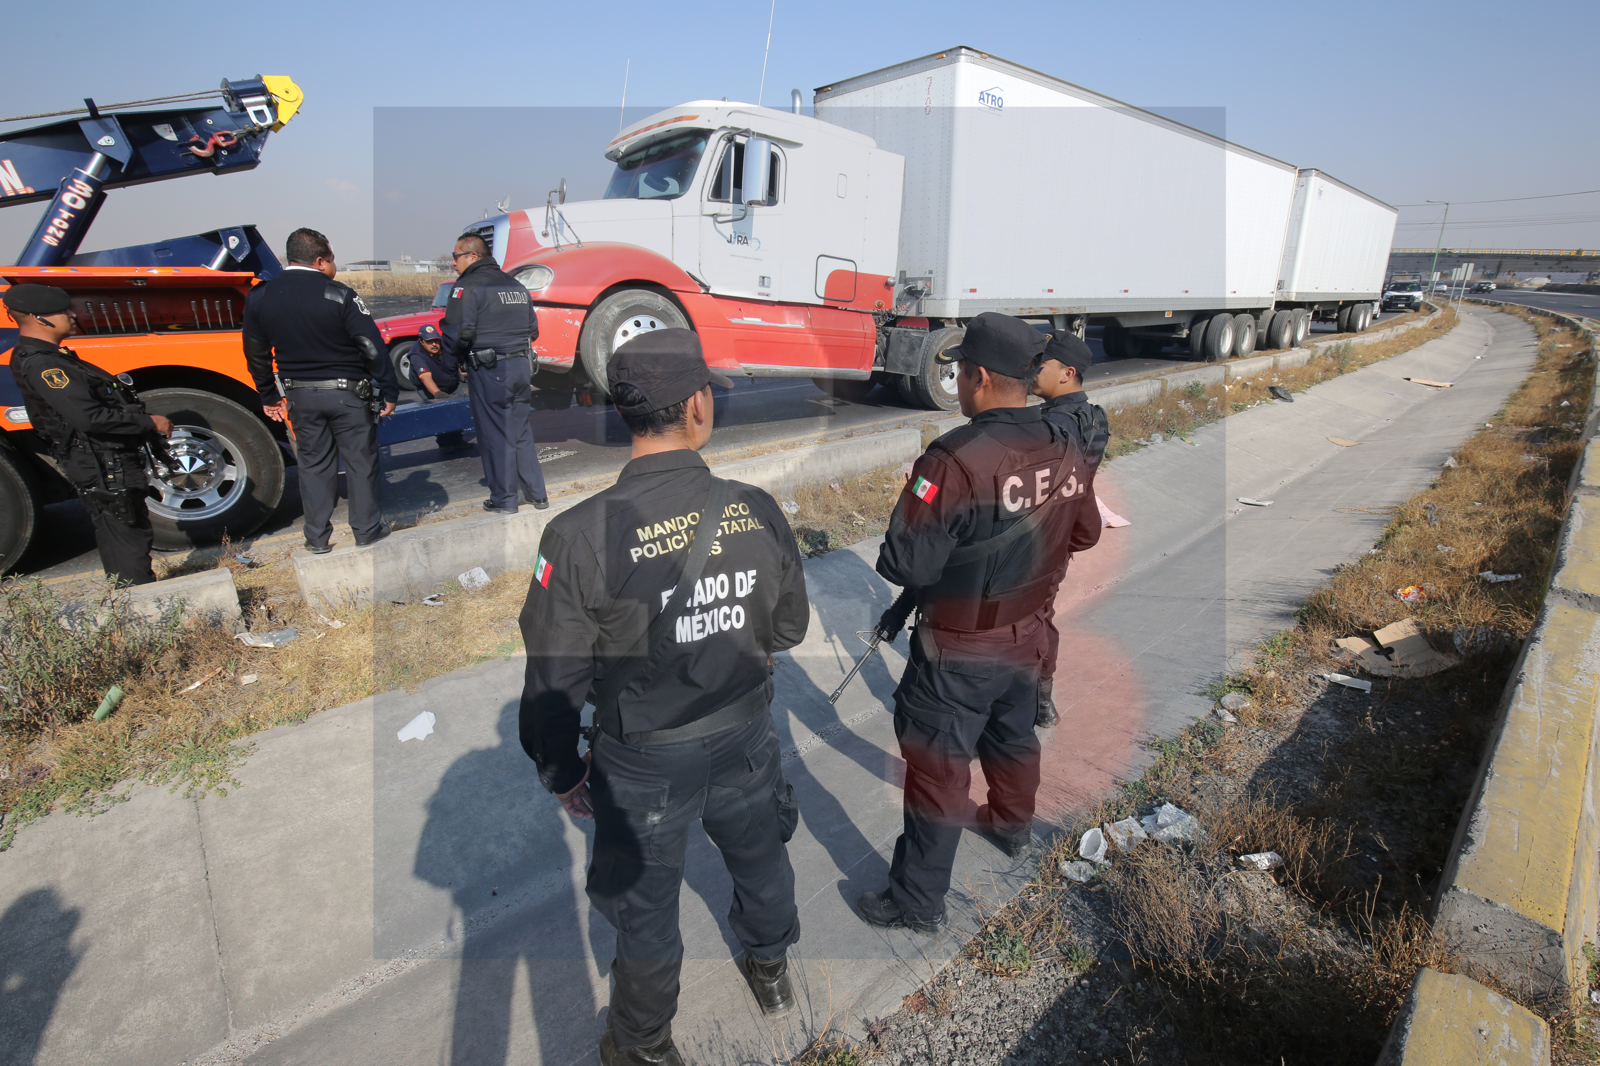 Recupera policía de Metepec camión con reporte de robo